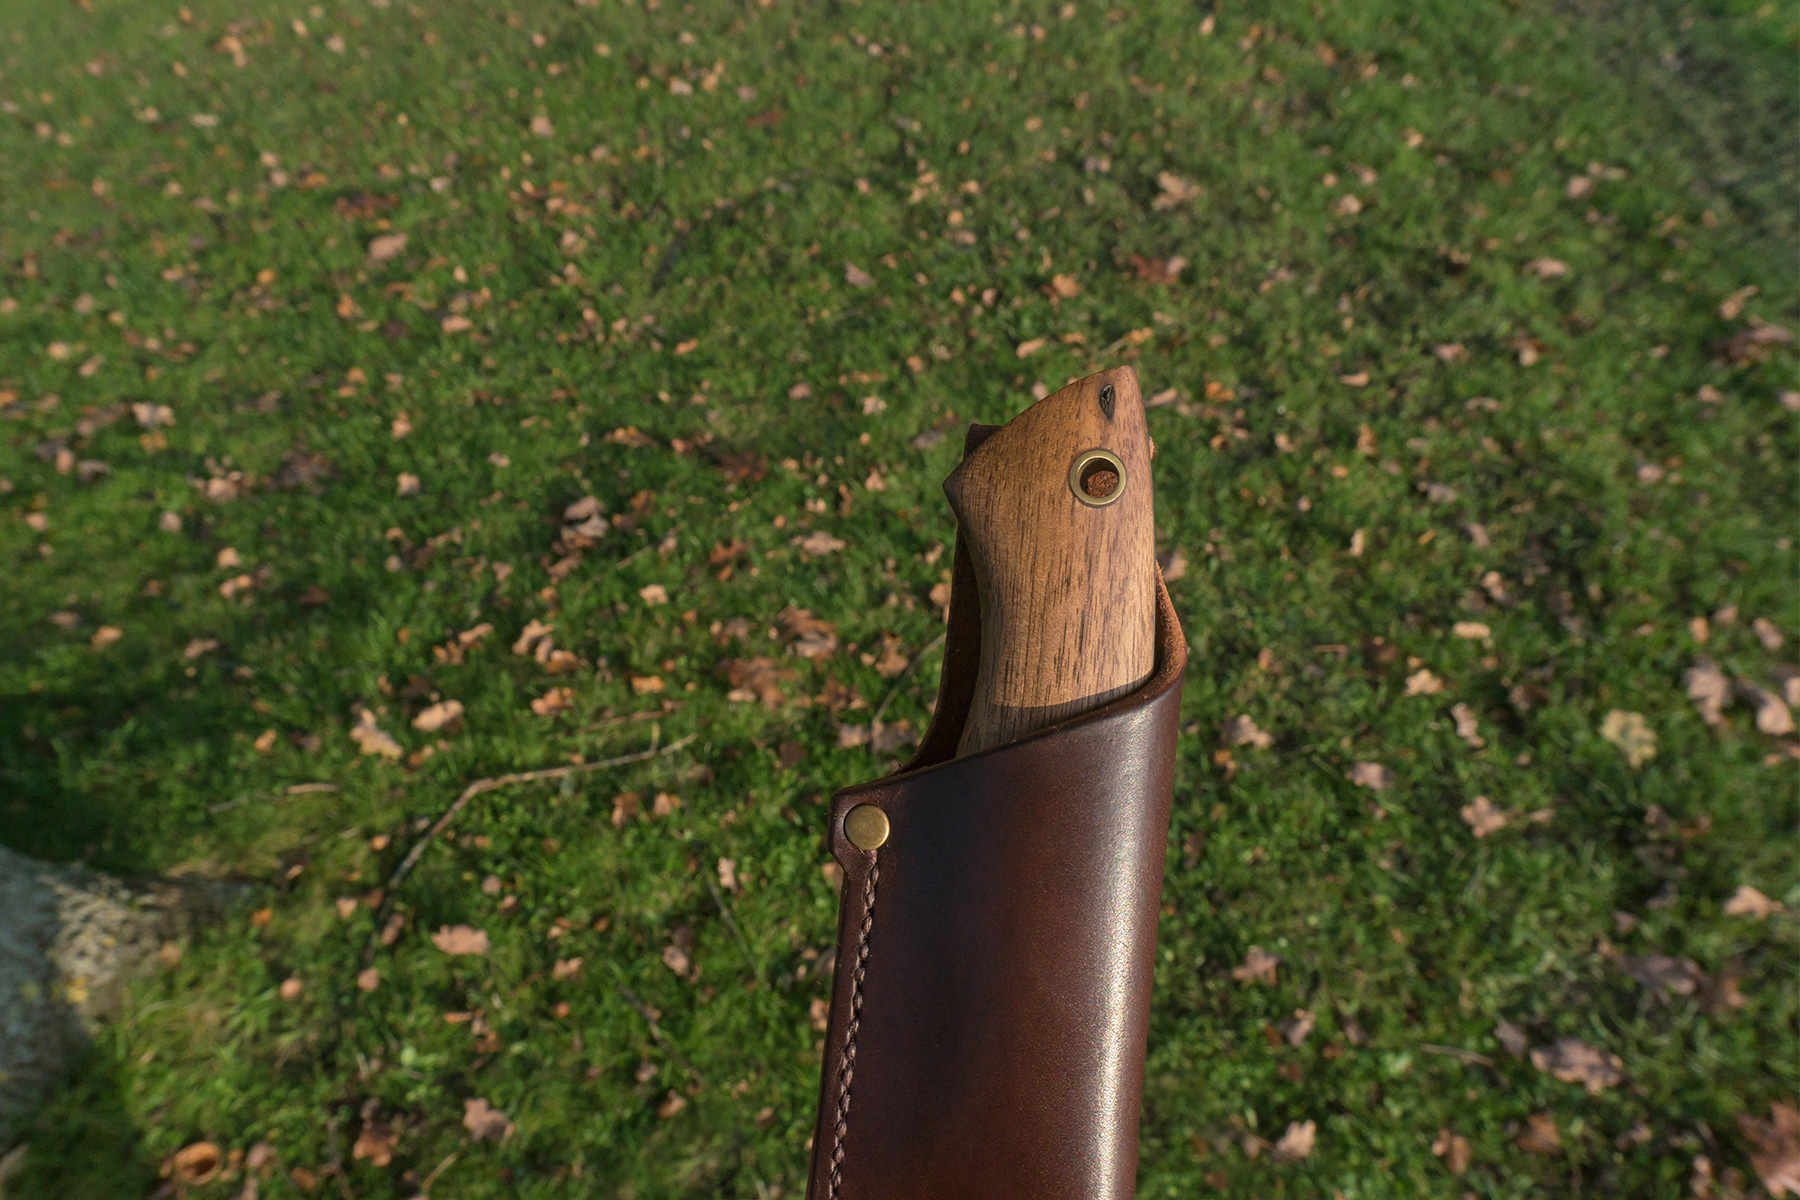 læderarbejde læder bushcraft kniv skede dominik gnas outdoor camping natur sy syning håndlavet messing valnød træ mørkebrun